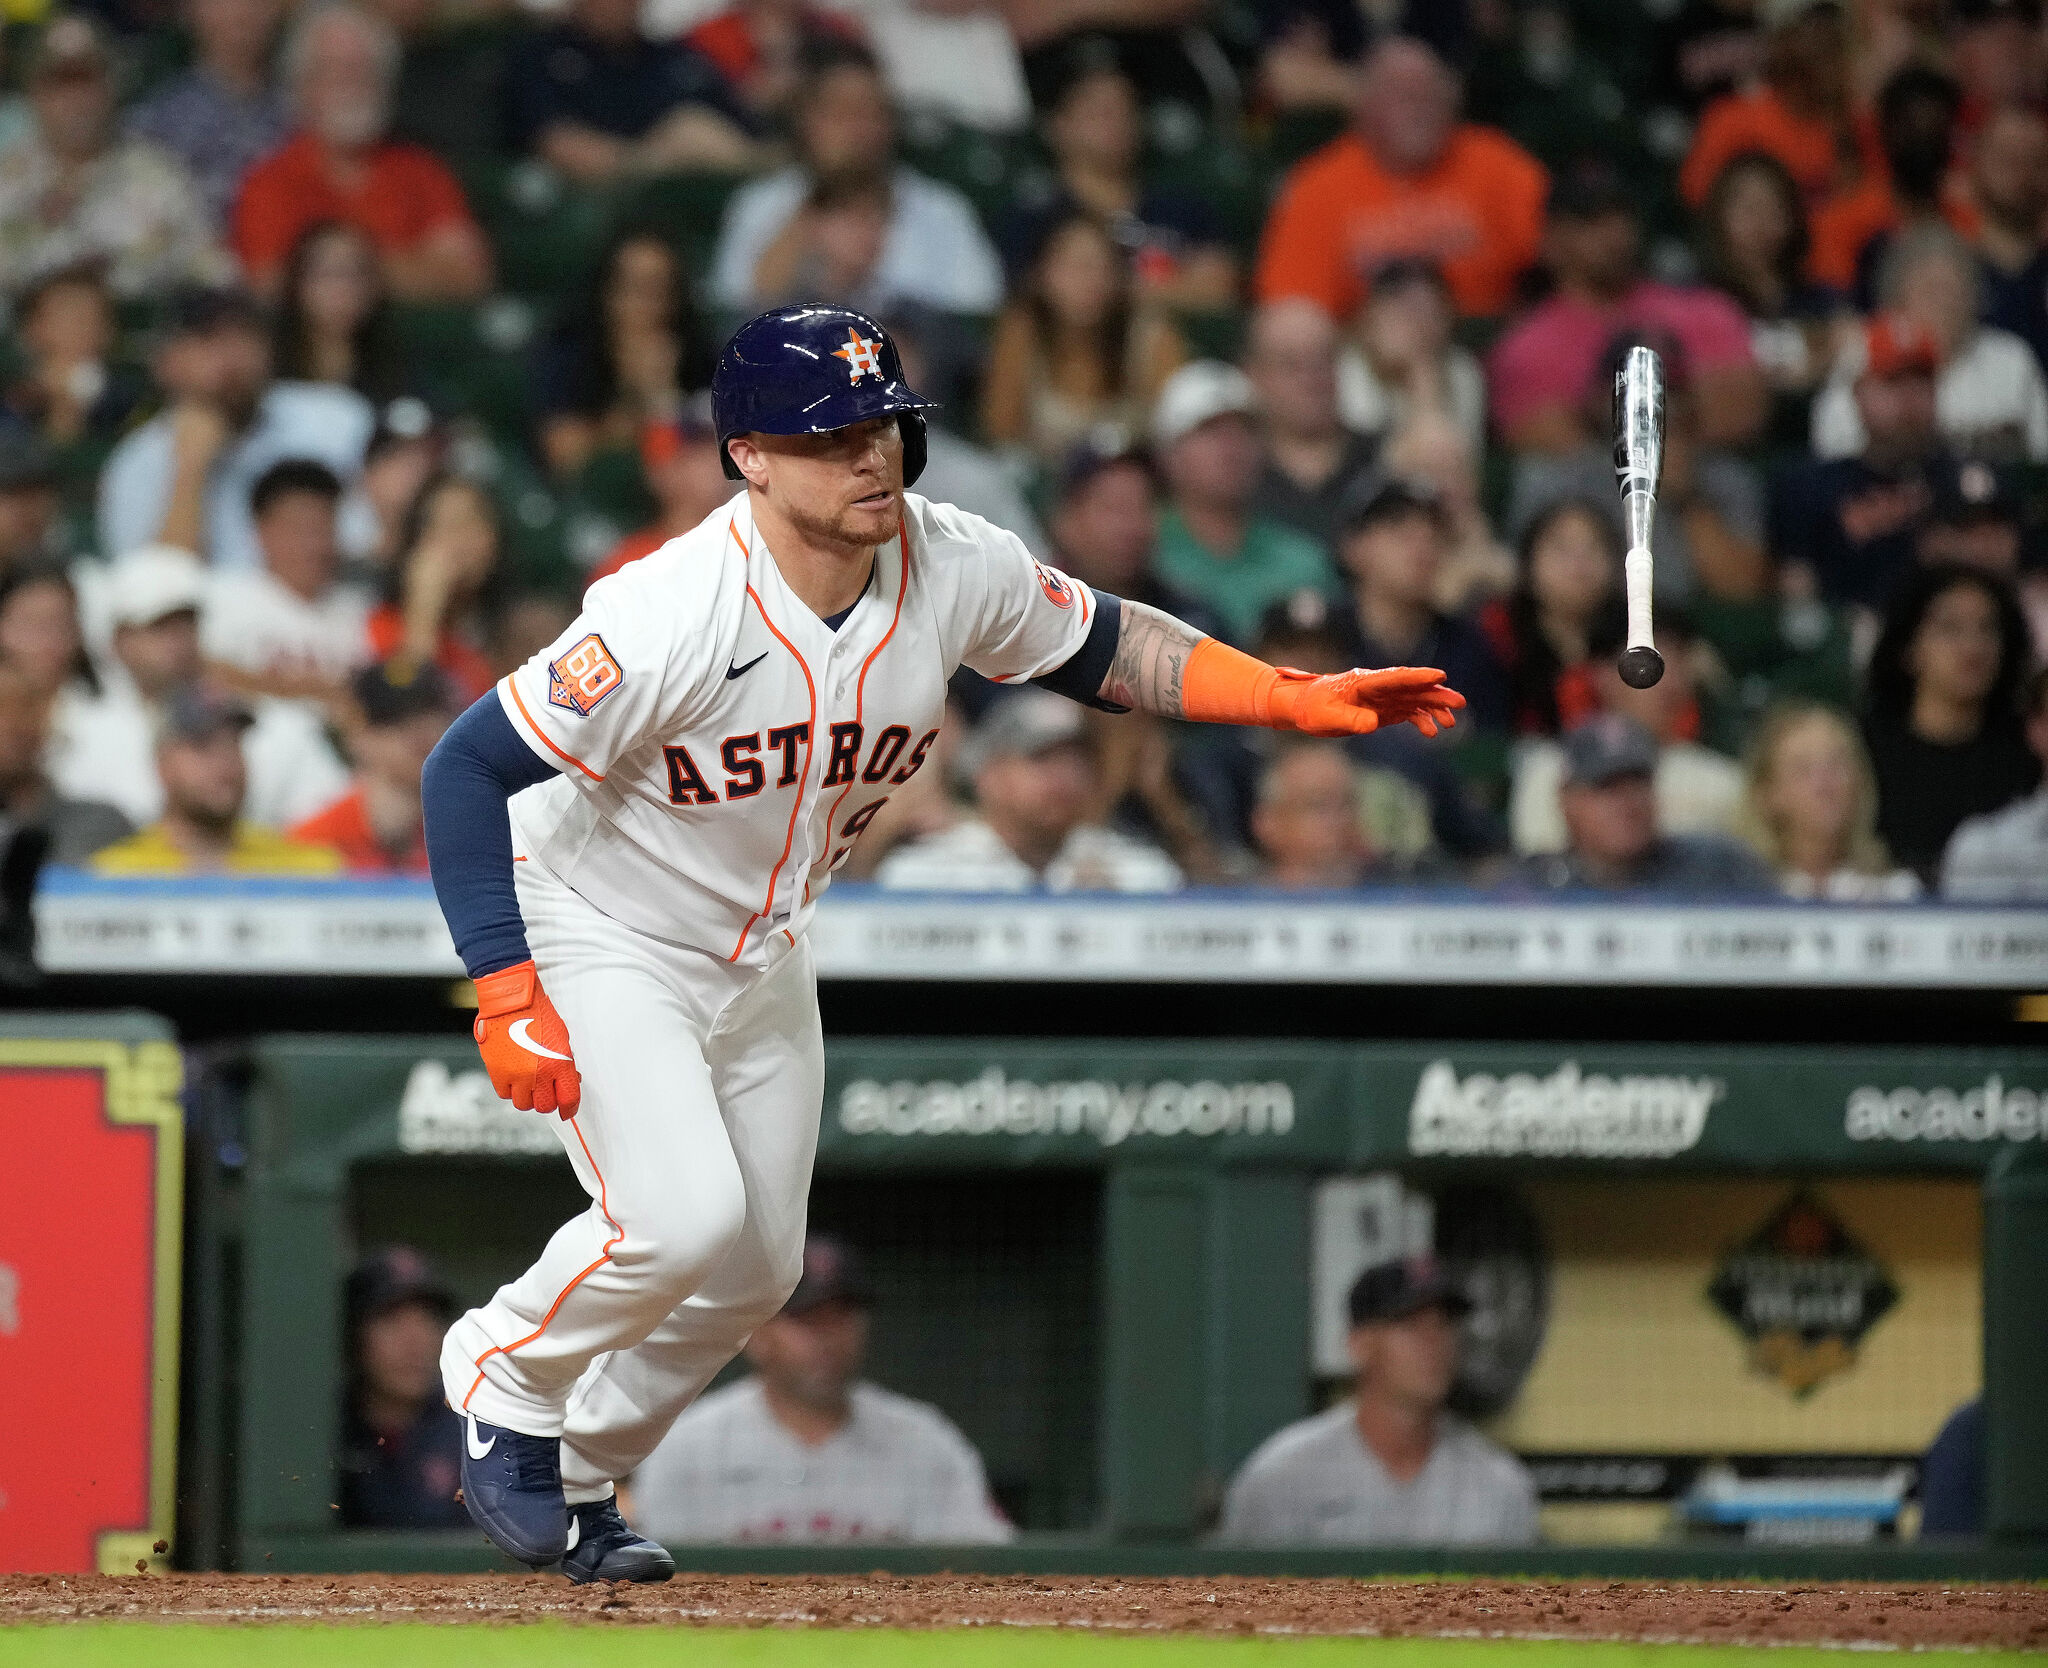 Houston Astros: Catcher Christian Vázquez acclimating to pitchers